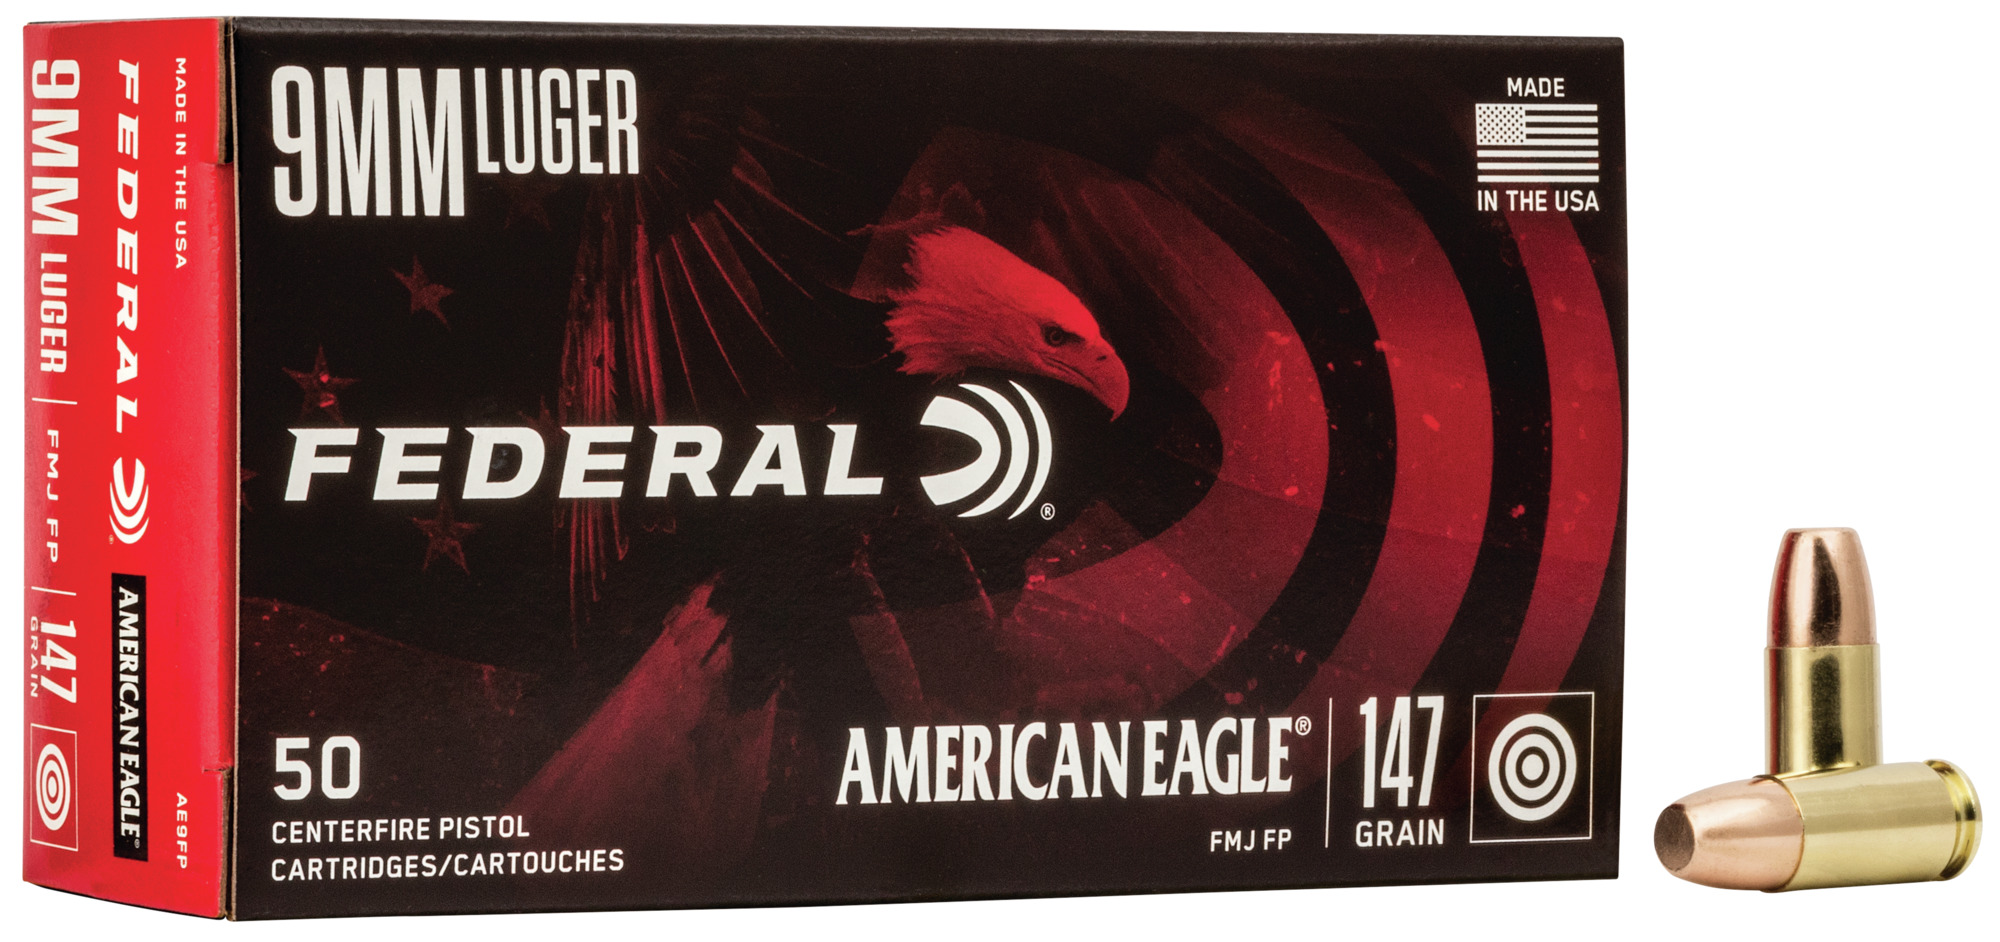 Buy American Eagle Handgun for USD 23.99 | Federal Ammunition